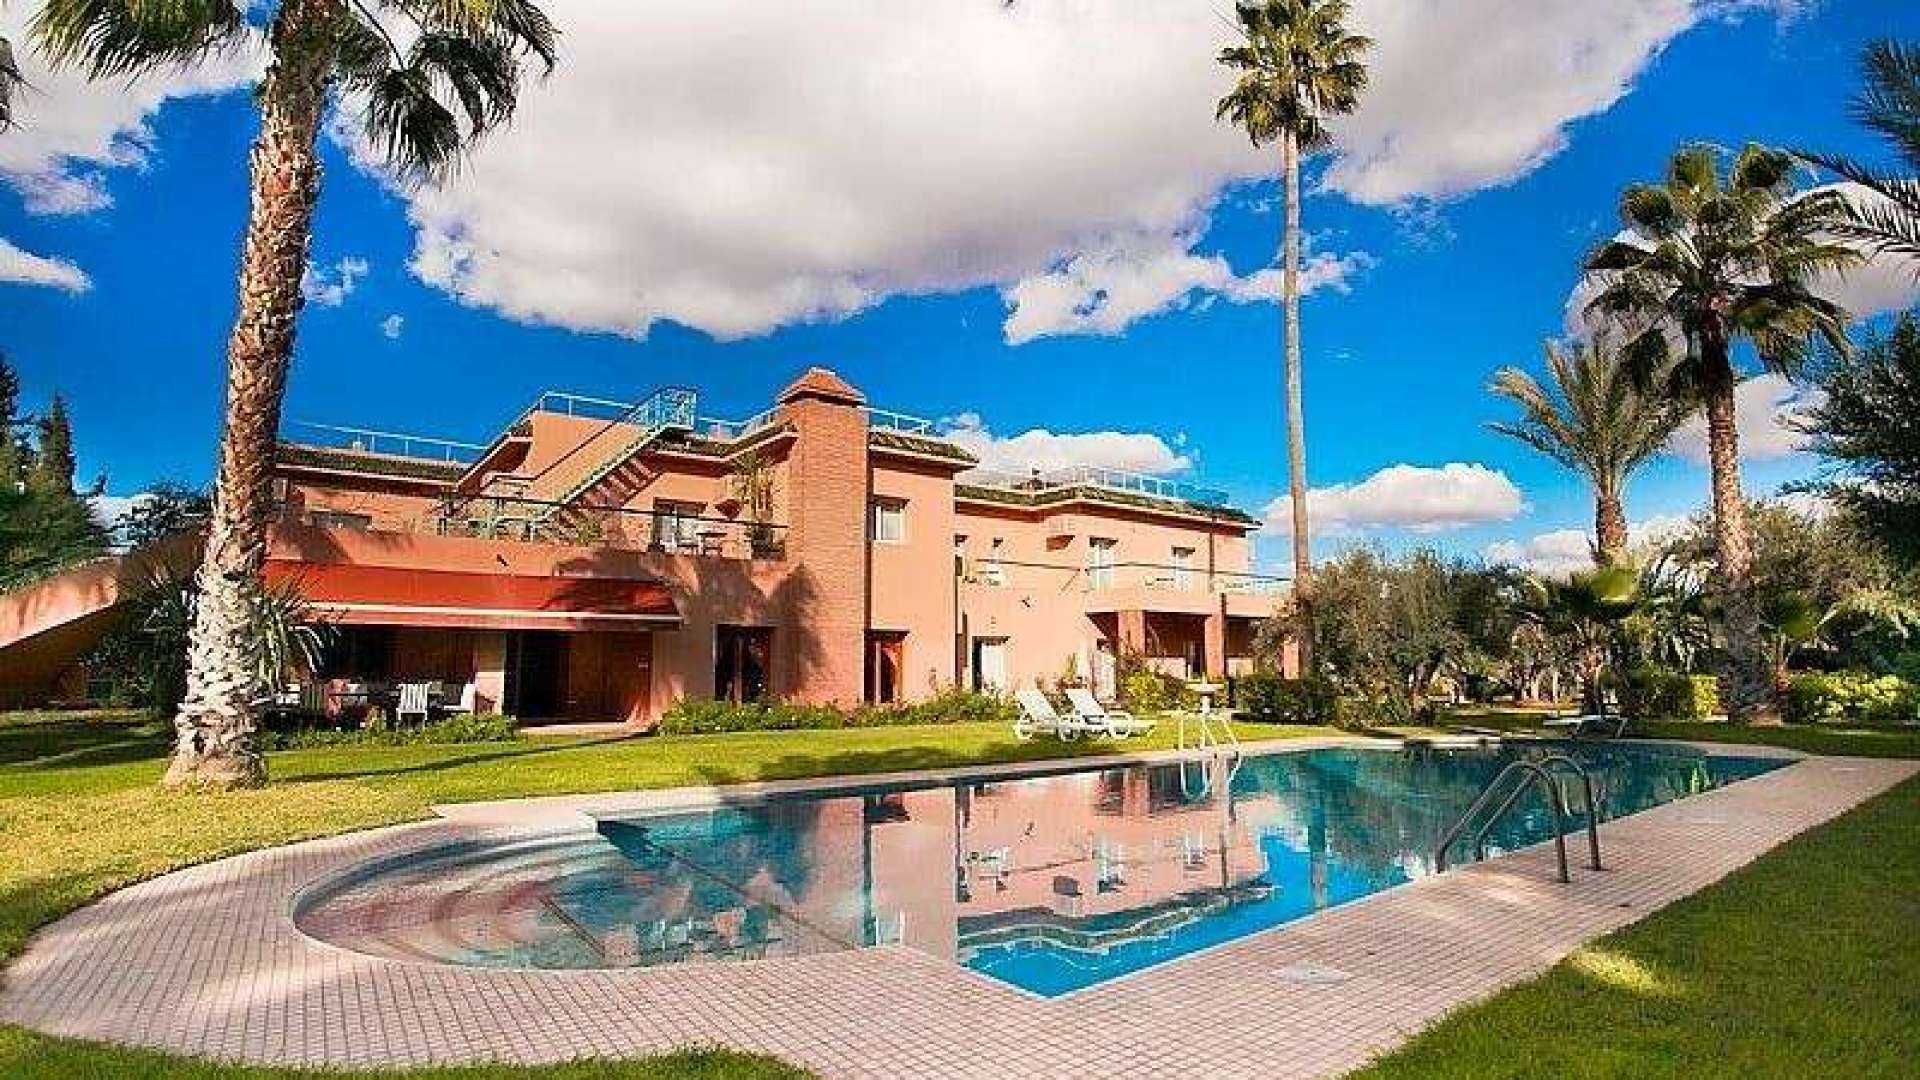 Location de vacances,Villa,Propriété de 18 chambres sur 1 hectare de jardin dans la Palmeraie,Marrakech,Palmeraie